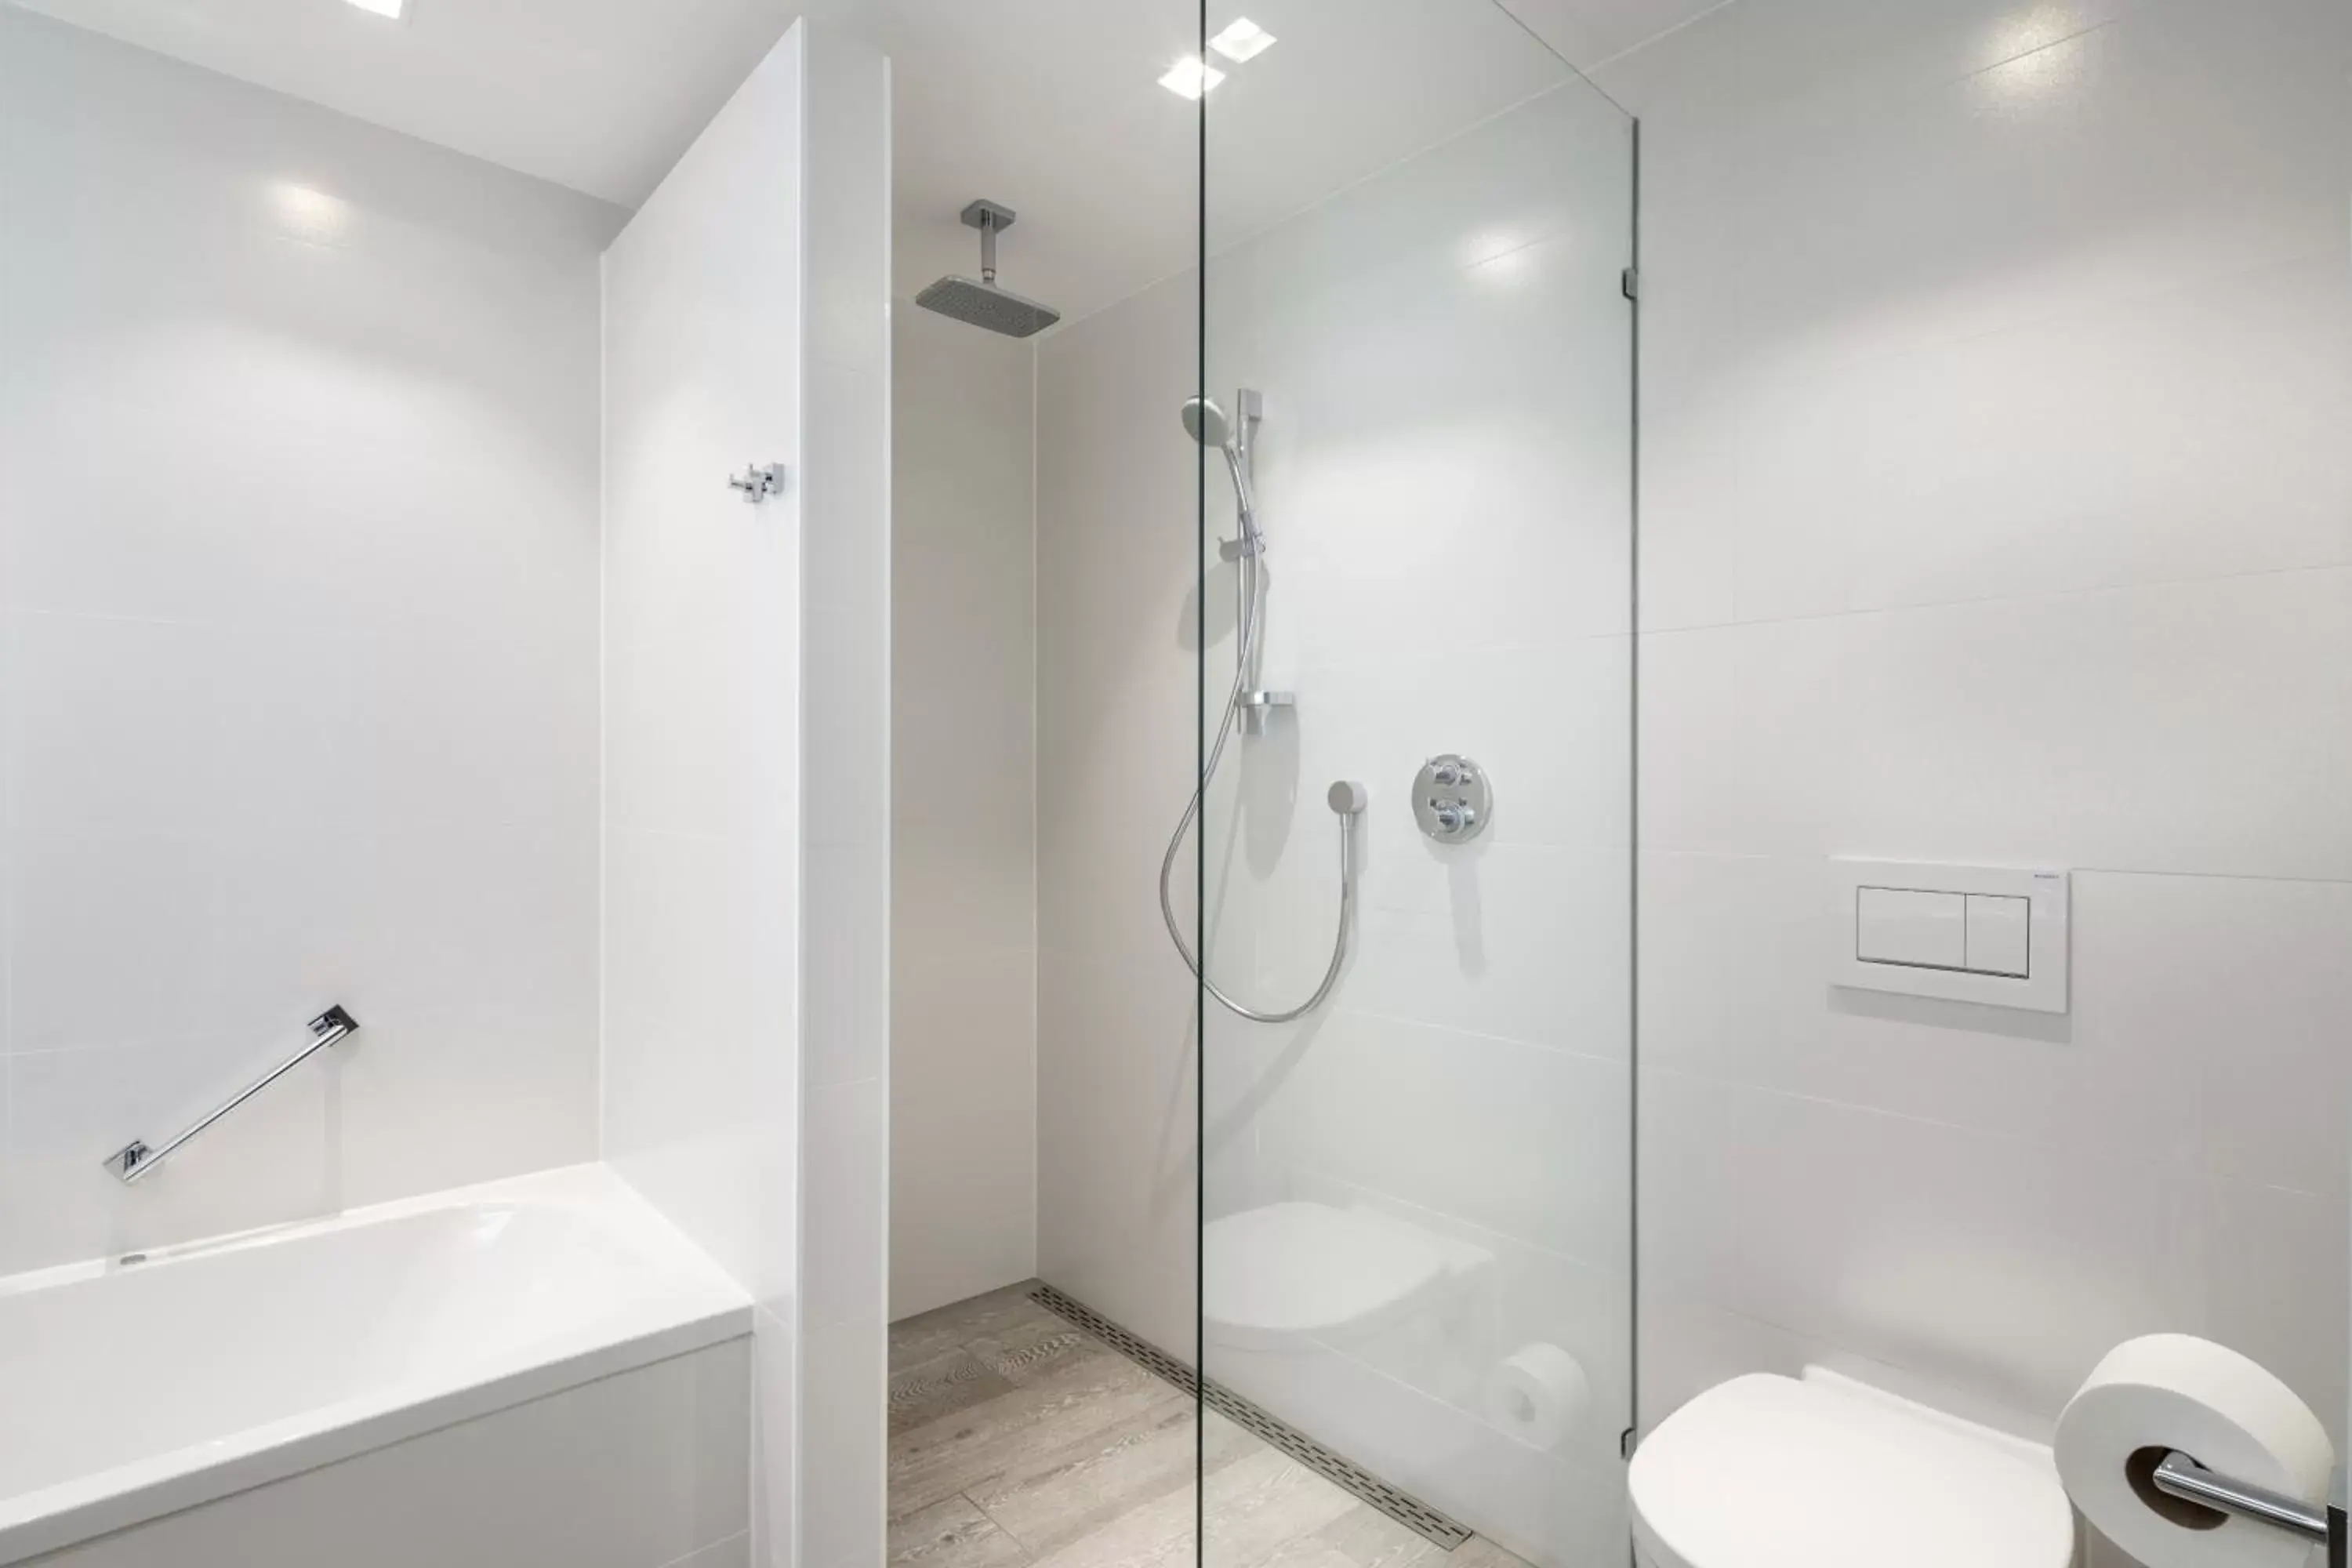 Shower, Bathroom in Van der Valk Hotel Vianen - Utrecht